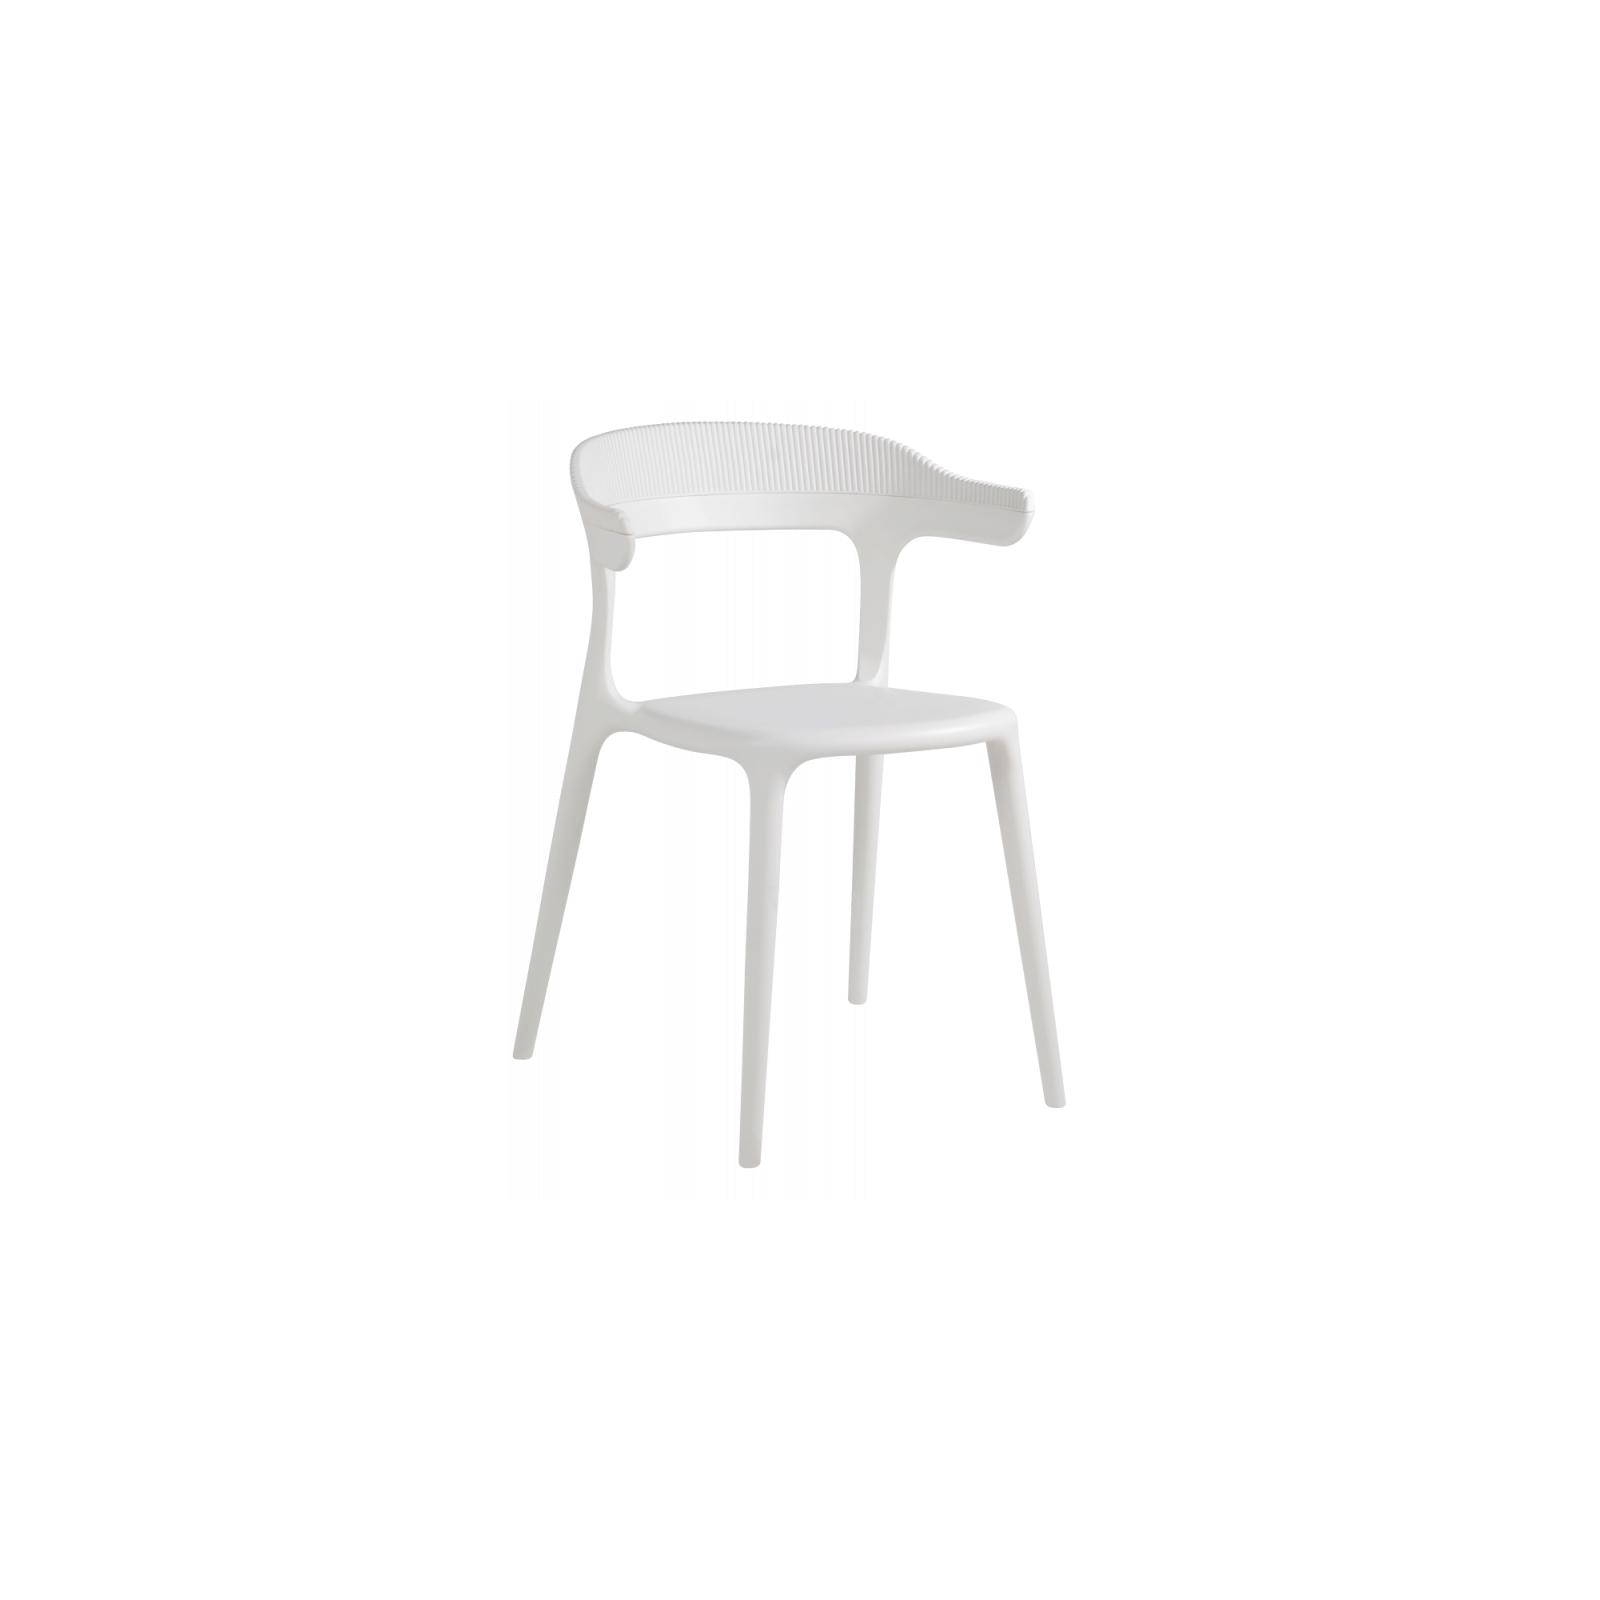 Кухонный стул PAPATYA luna stripe, черное сиденье, черный верх (2337)